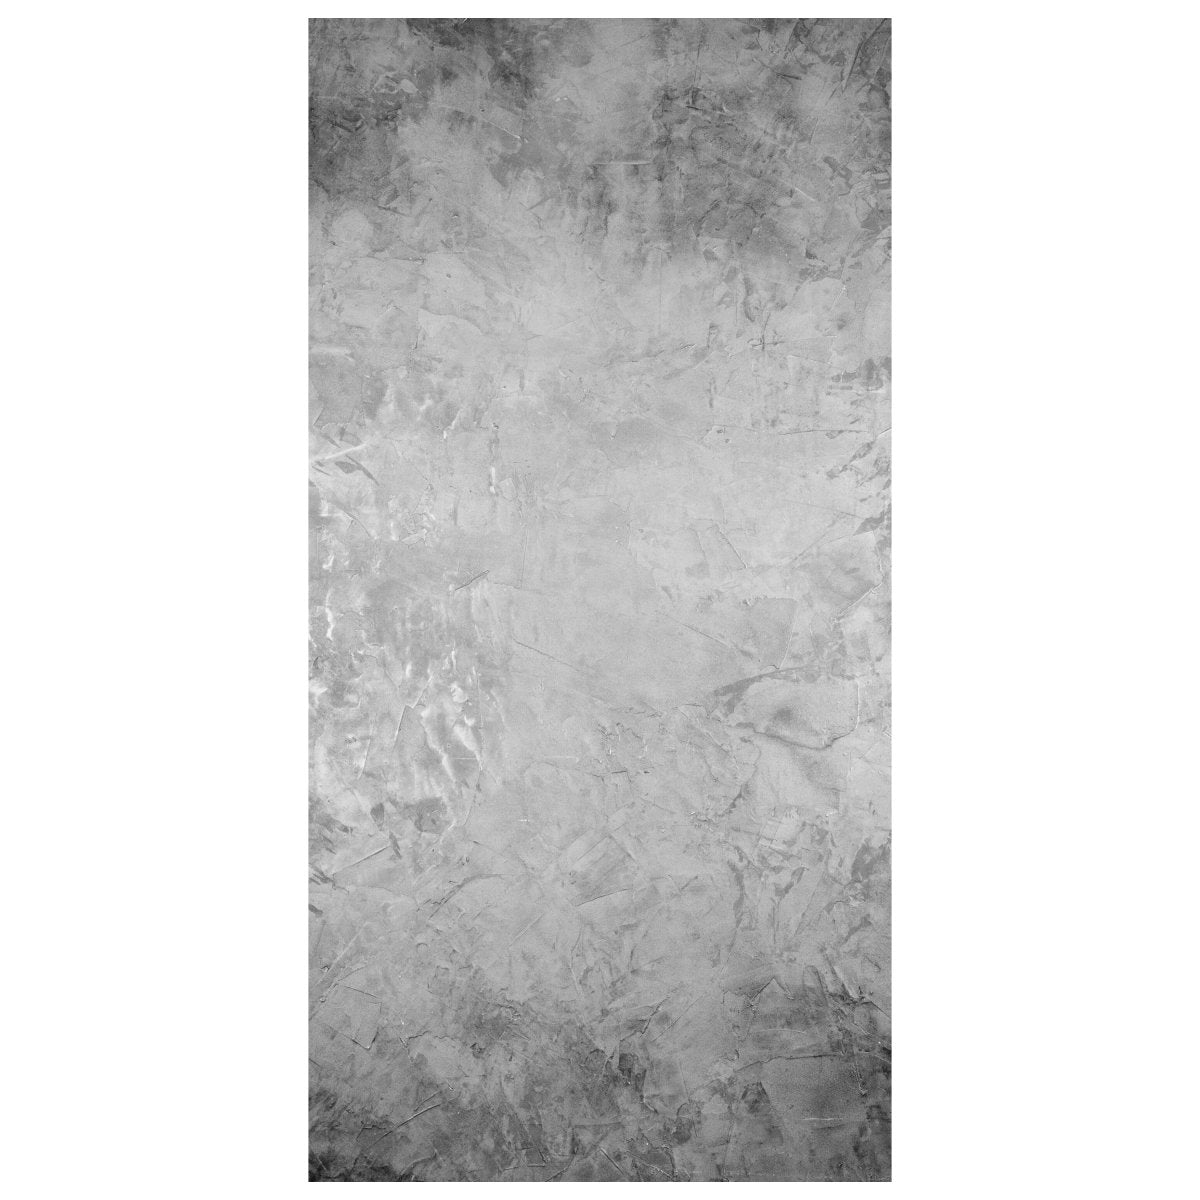 Türtapete grauer Putz, Wohnwand, graue Wand M1231 - Bild 2